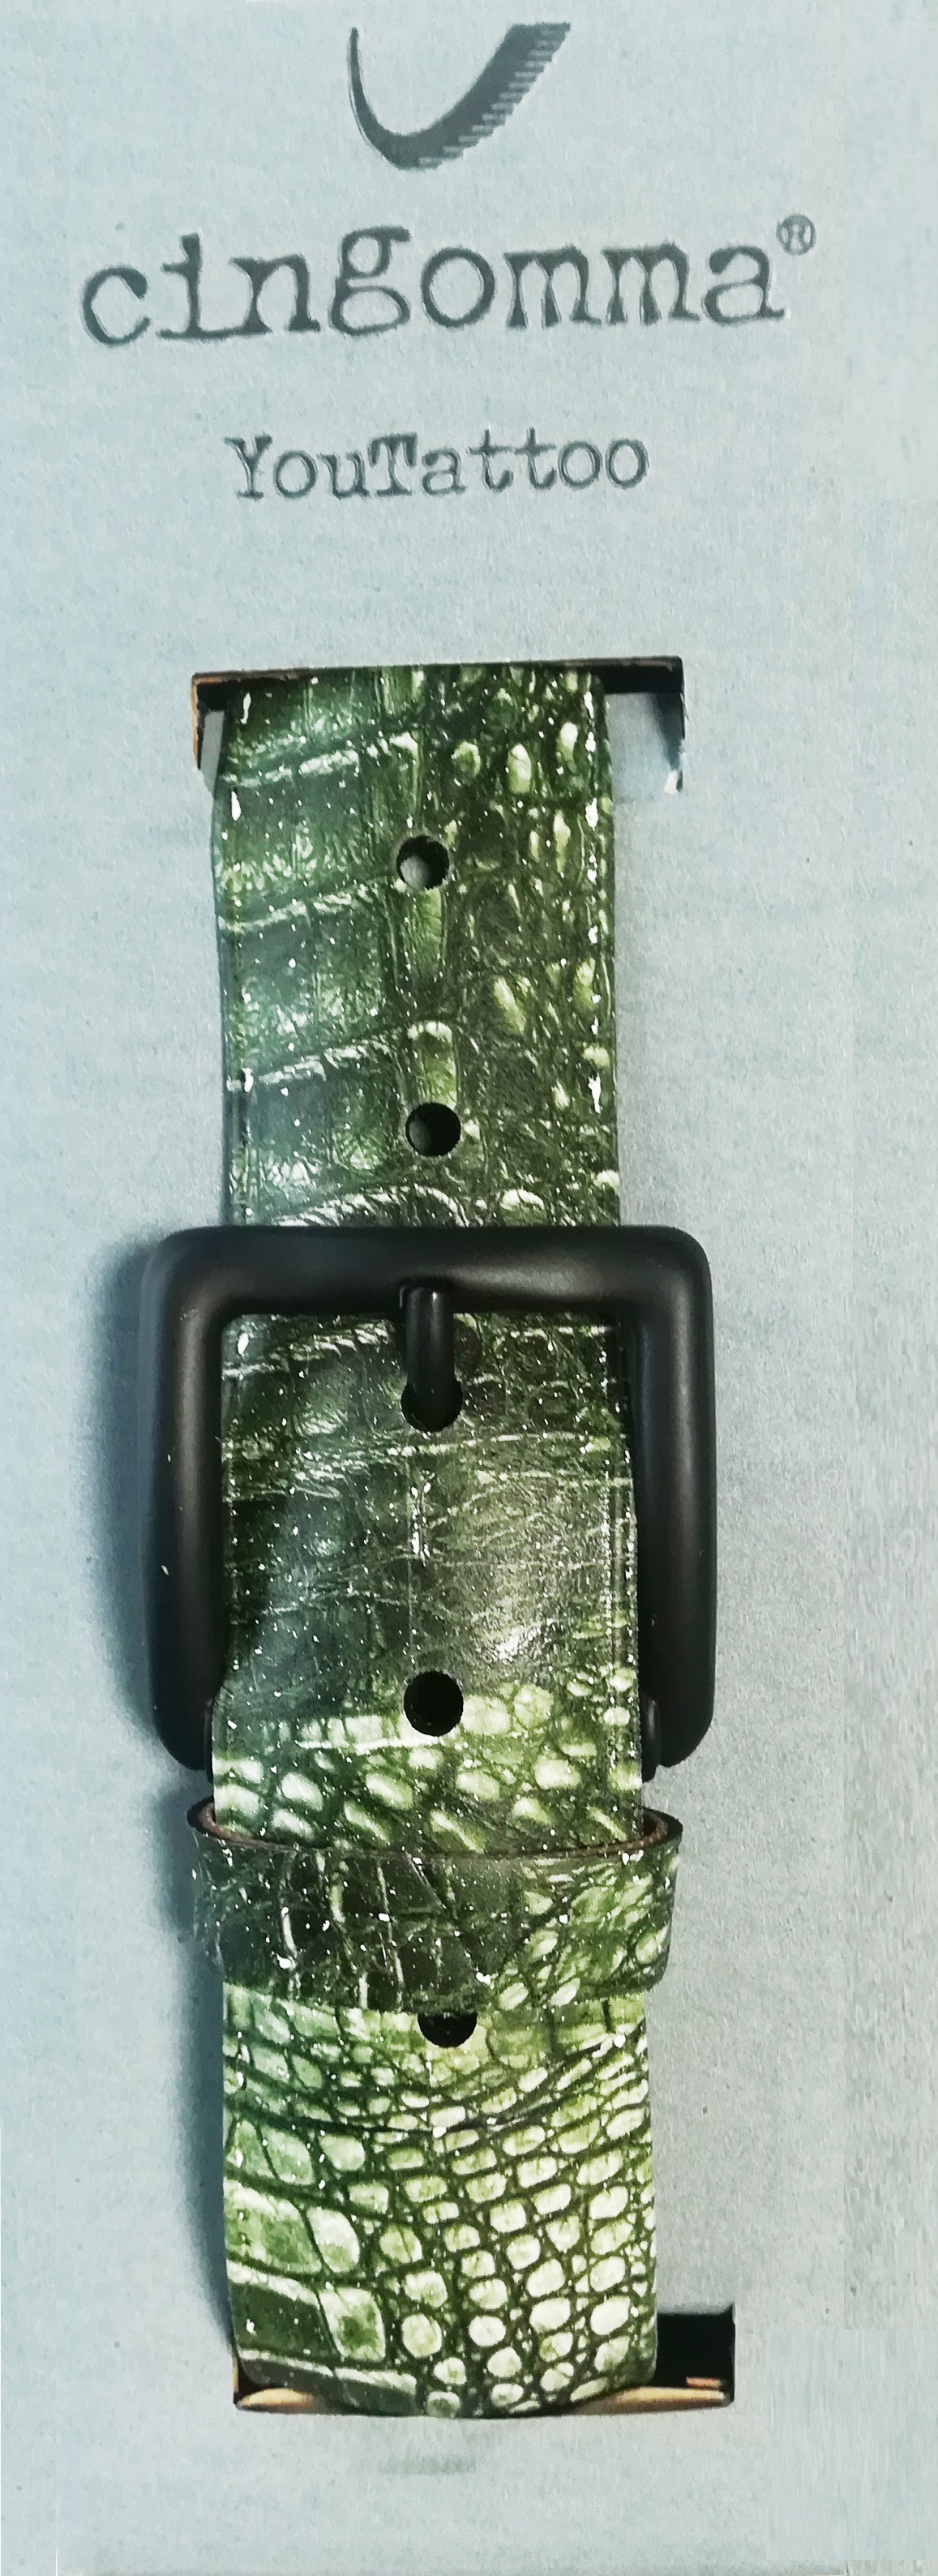 Cintura di copertone verniciato Cingomma YOUTATTOO Graphics Crocodile  